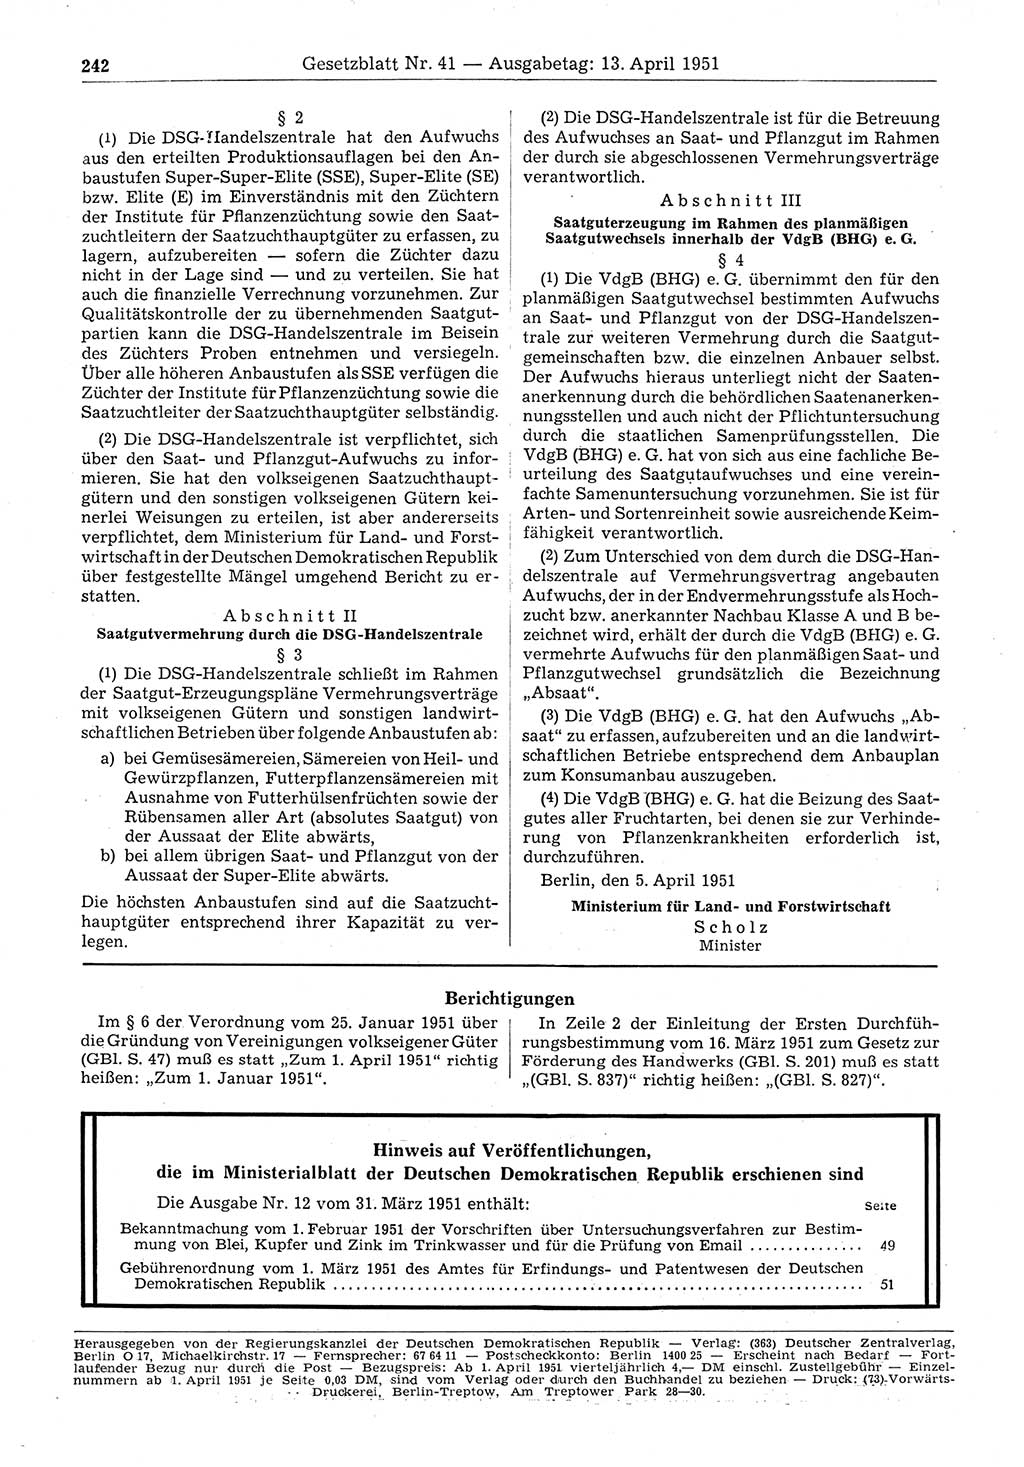 Gesetzblatt (GBl.) der Deutschen Demokratischen Republik (DDR) 1951, Seite 242 (GBl. DDR 1951, S. 242)